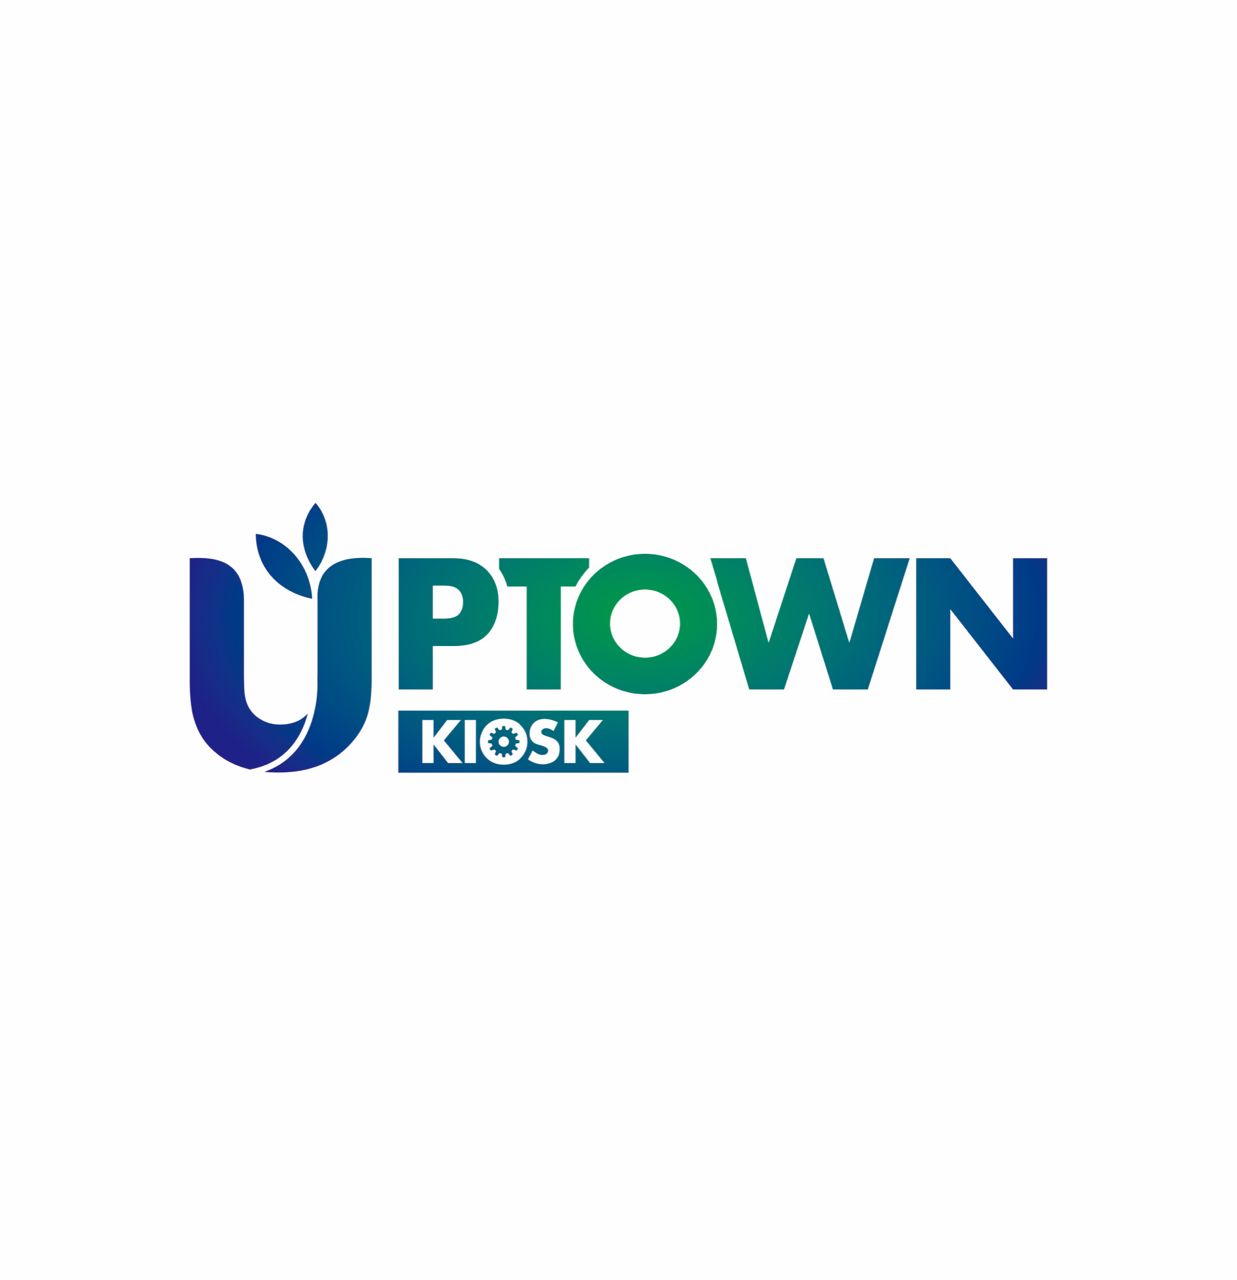 Uptown Kiosk